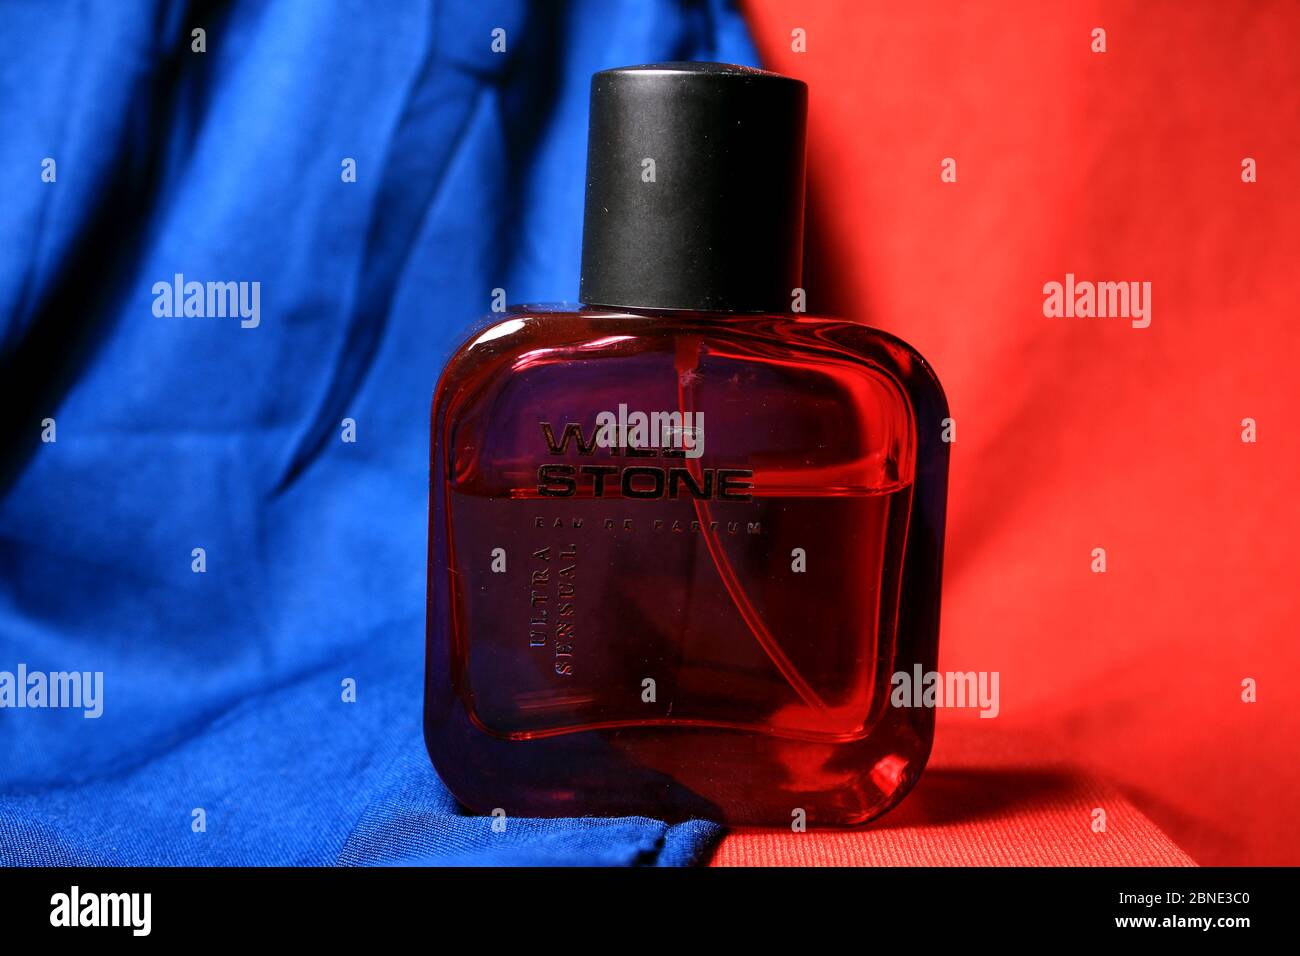 Rote Farbe Herren Parfüm Flasche isoliert auf blauem und rotem Hintergrund  mit weiblichen Accessoires. Rote Parfümflasche von 'Wild Stone' mit  schwarzer Kappe Stockfotografie - Alamy